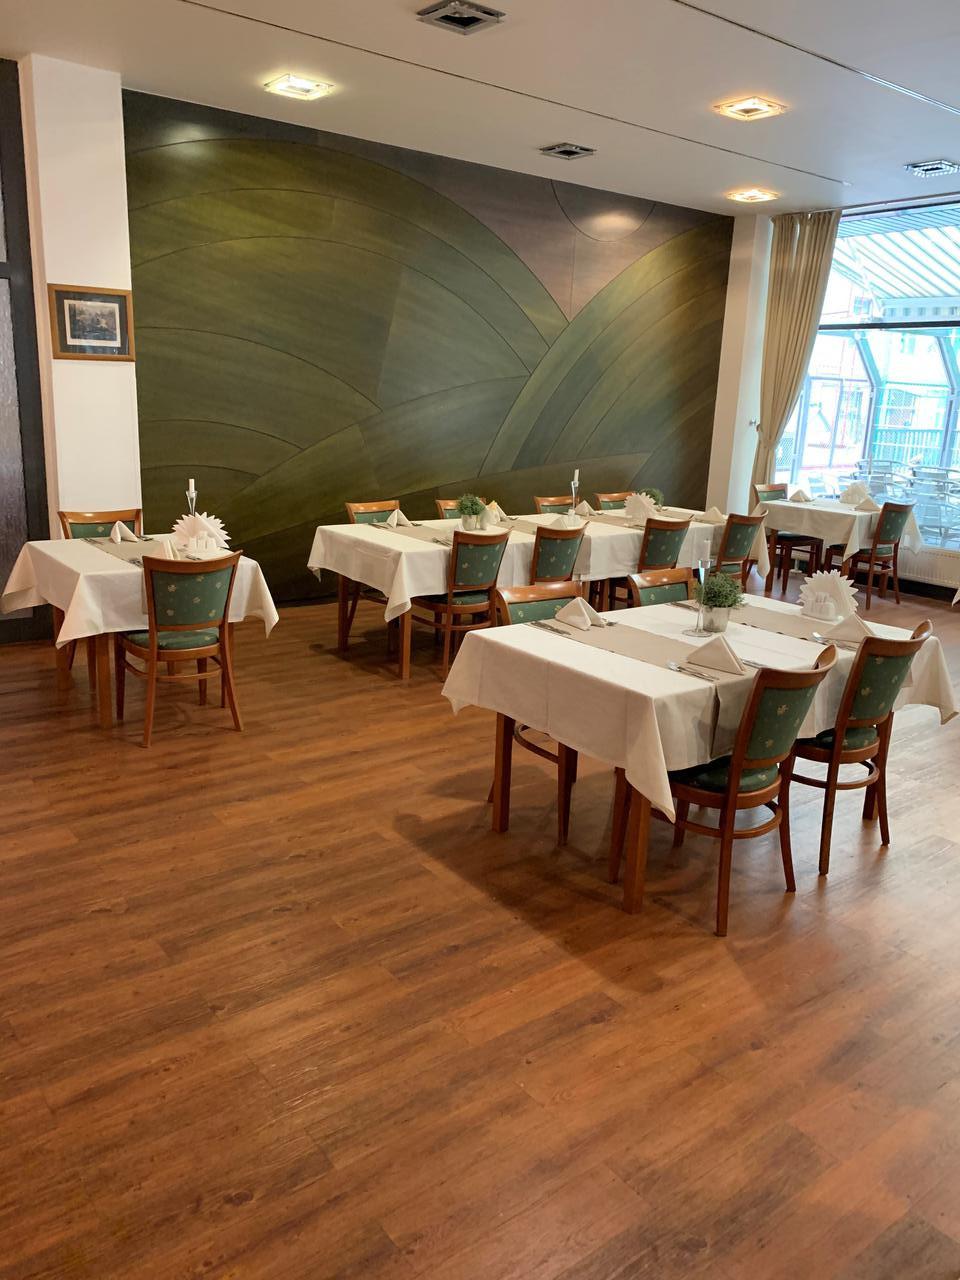 Словацкий дом ресторан купить виллу с пляжем в черногории